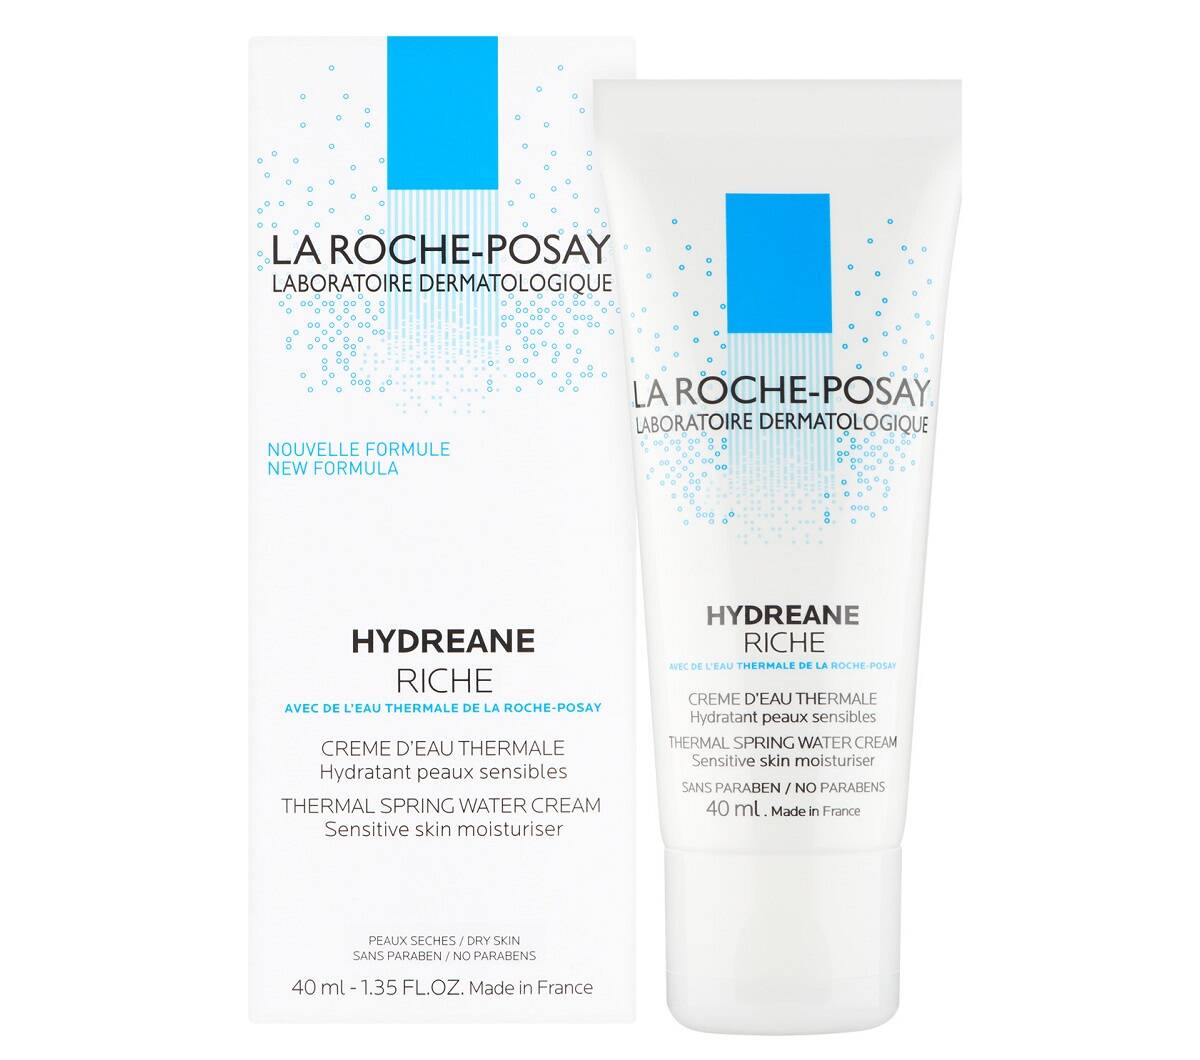 مرطوب کننده لاروش پوزای پوست حساس و خشک هیدرین ریچ (LA ROCHE-POSAY Hydreane Riche Moisturizing Cream for sensitive skin, 40ml)